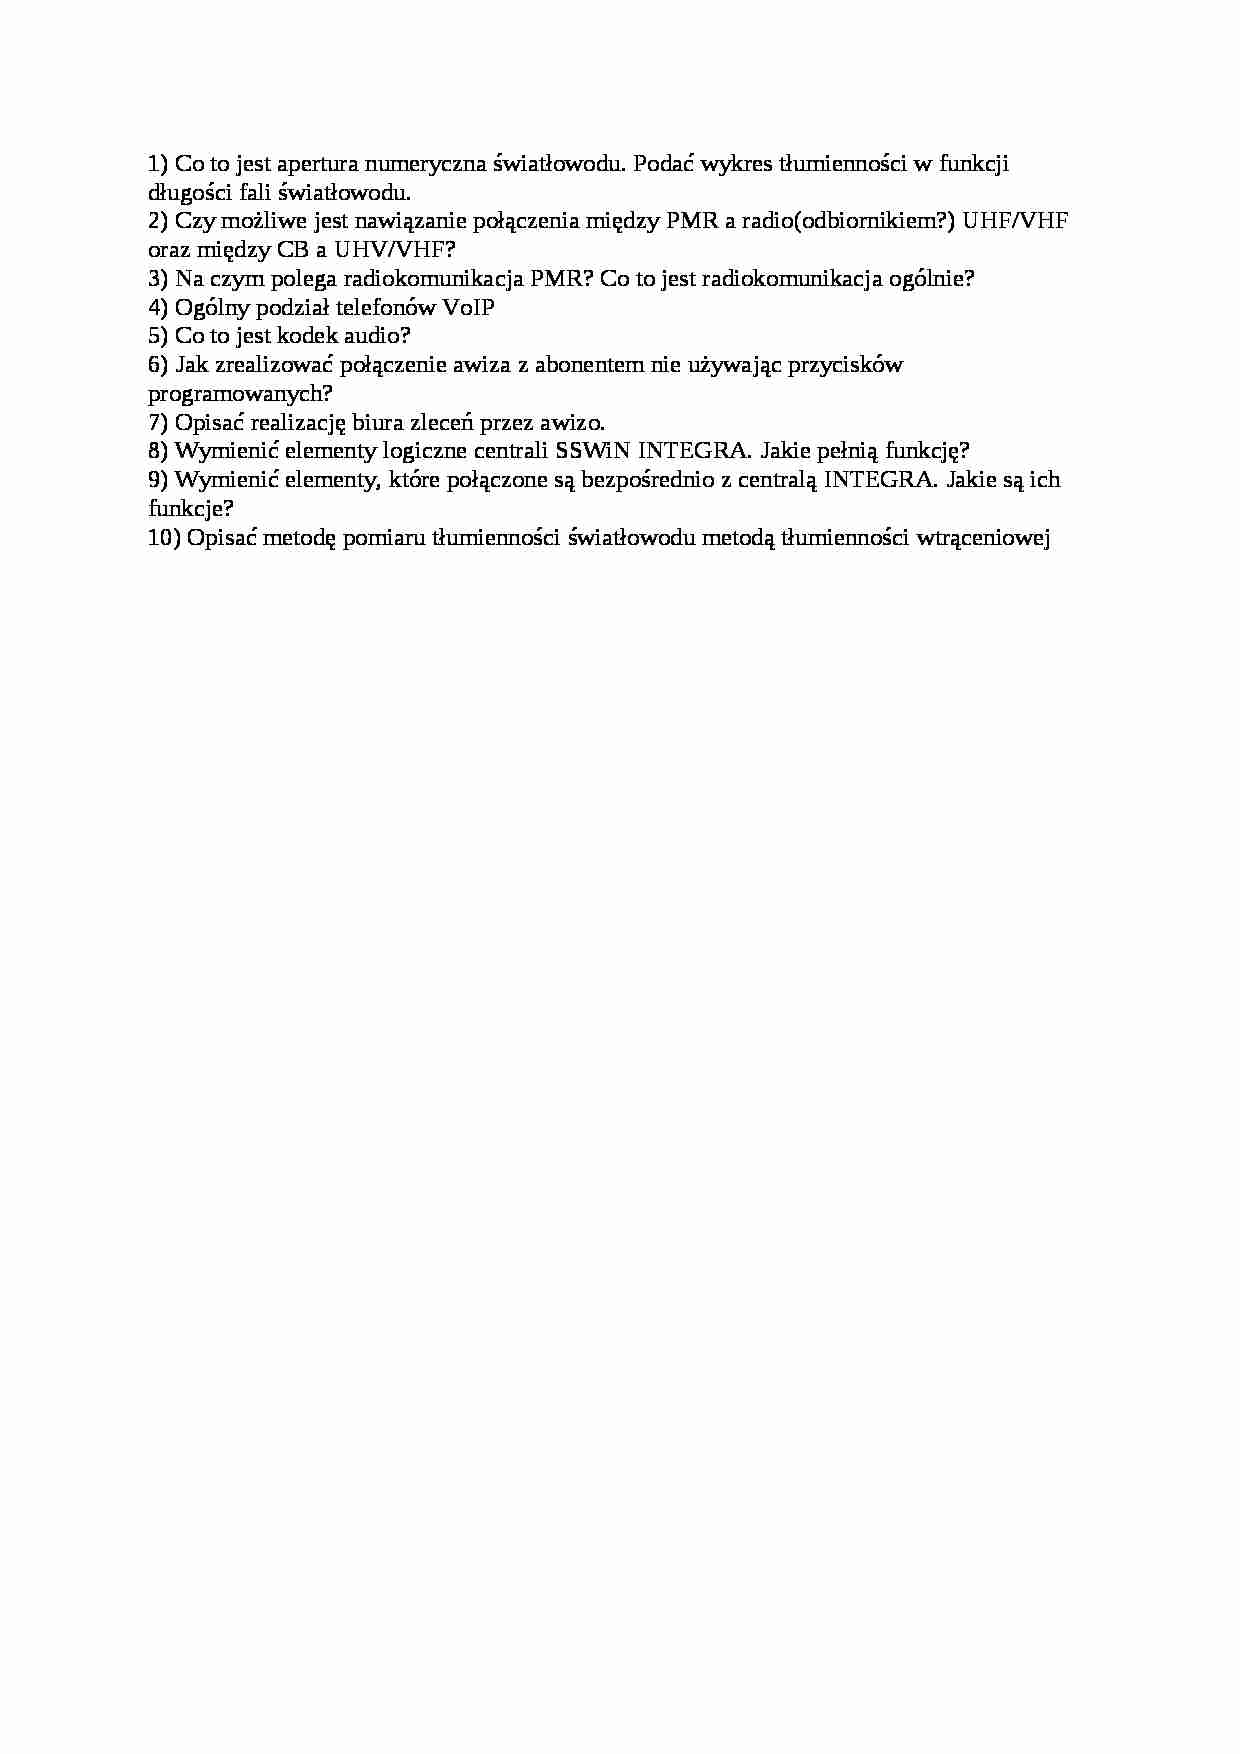 Telematyka transportu - pytania na egzamin - strona 1